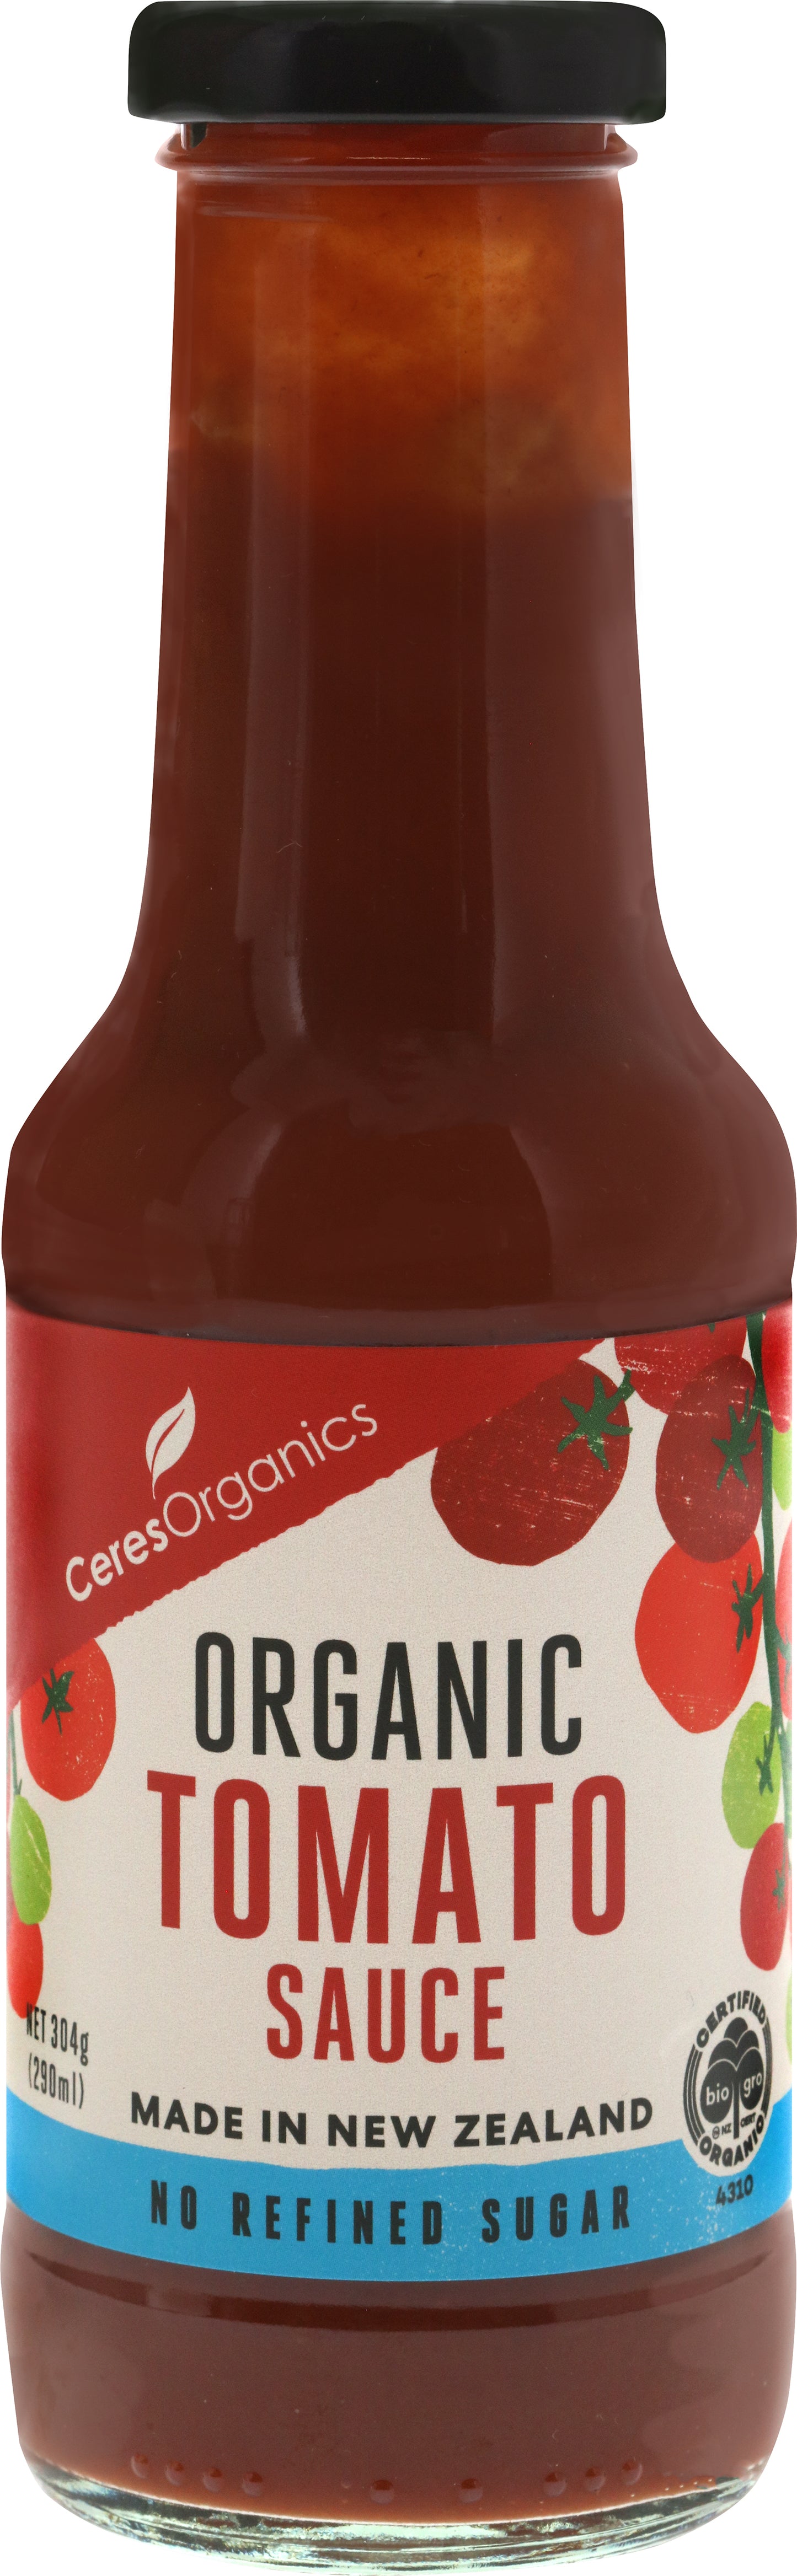 Organic Tomato Sauce - No Refined Sugar - 290 ml